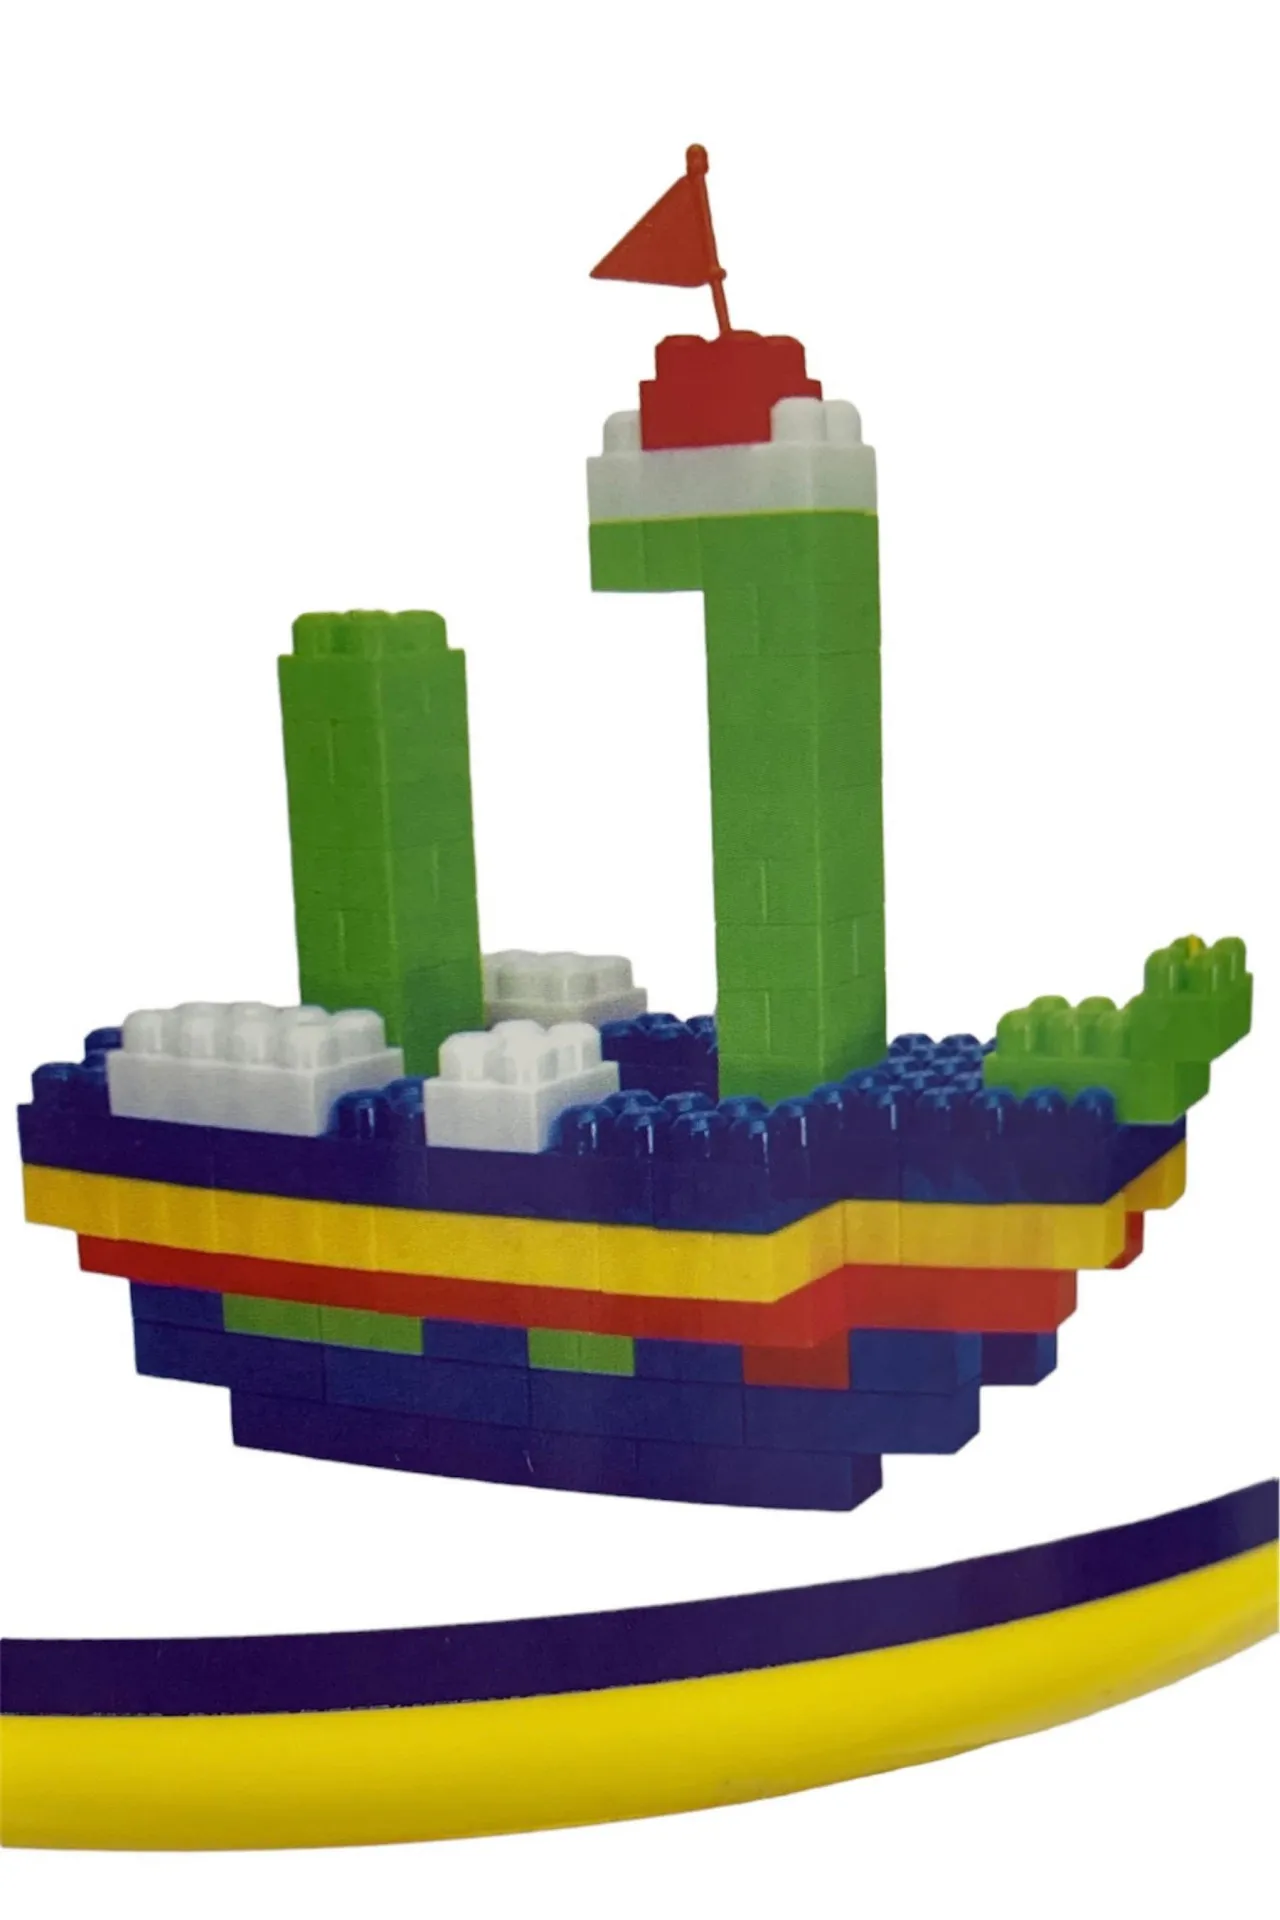 Lego 707 qismlari bilan chelak vs6584-1 shk sovg'a#5